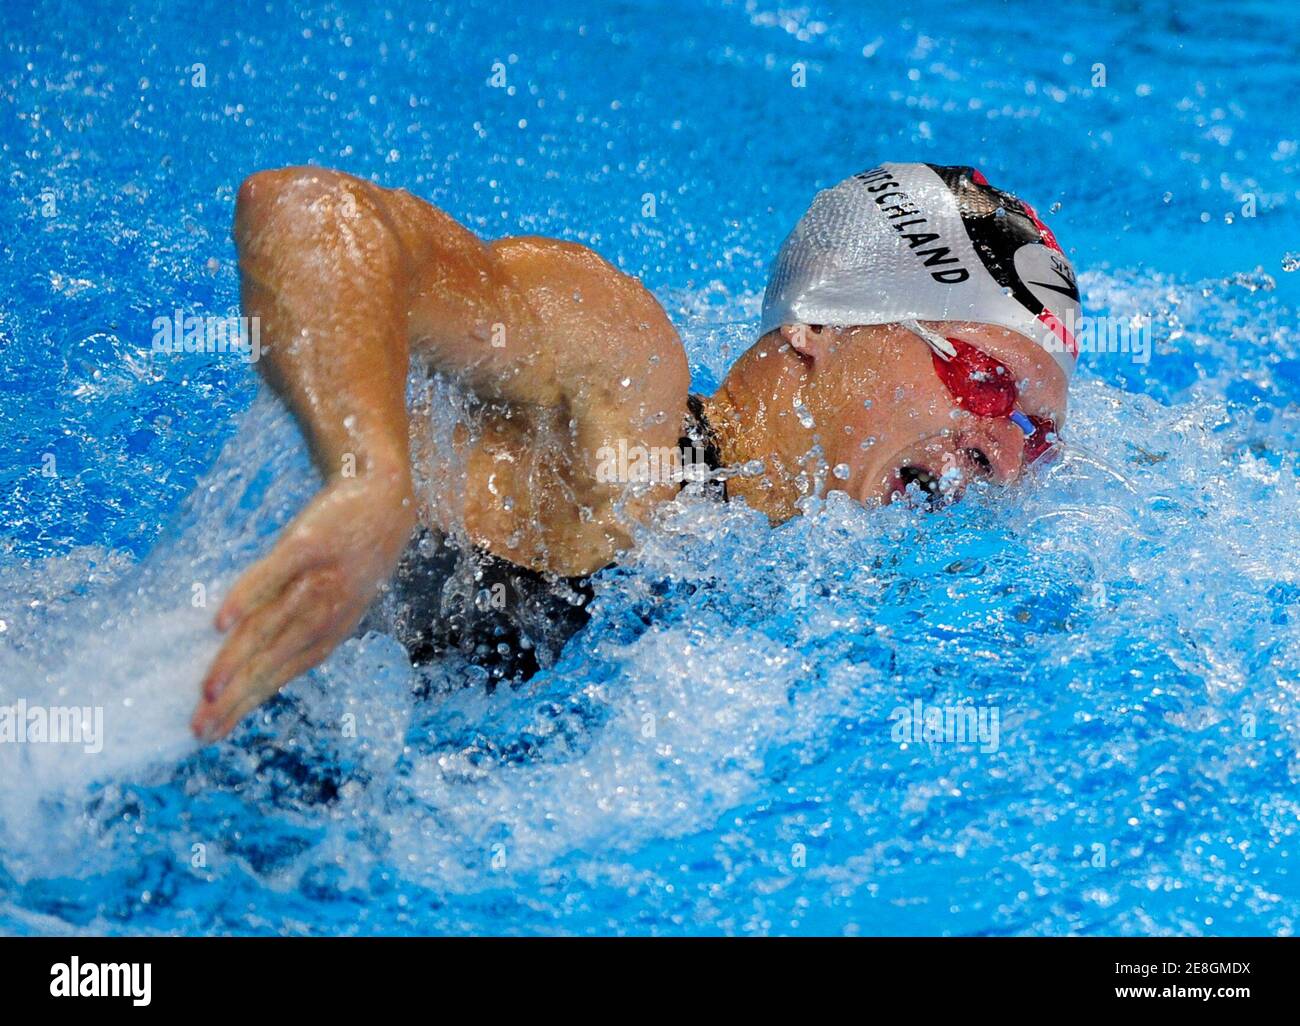 Steffen Gebhardt Deutschland schwimmt, während die Männer moderner Fünfkampf 200m Freistil schwimmen Event an der Beijing 2008 Olympischen Spiele August 21, 2008.     REUTERS/Desmond Boylan (CHINA) Stockfoto